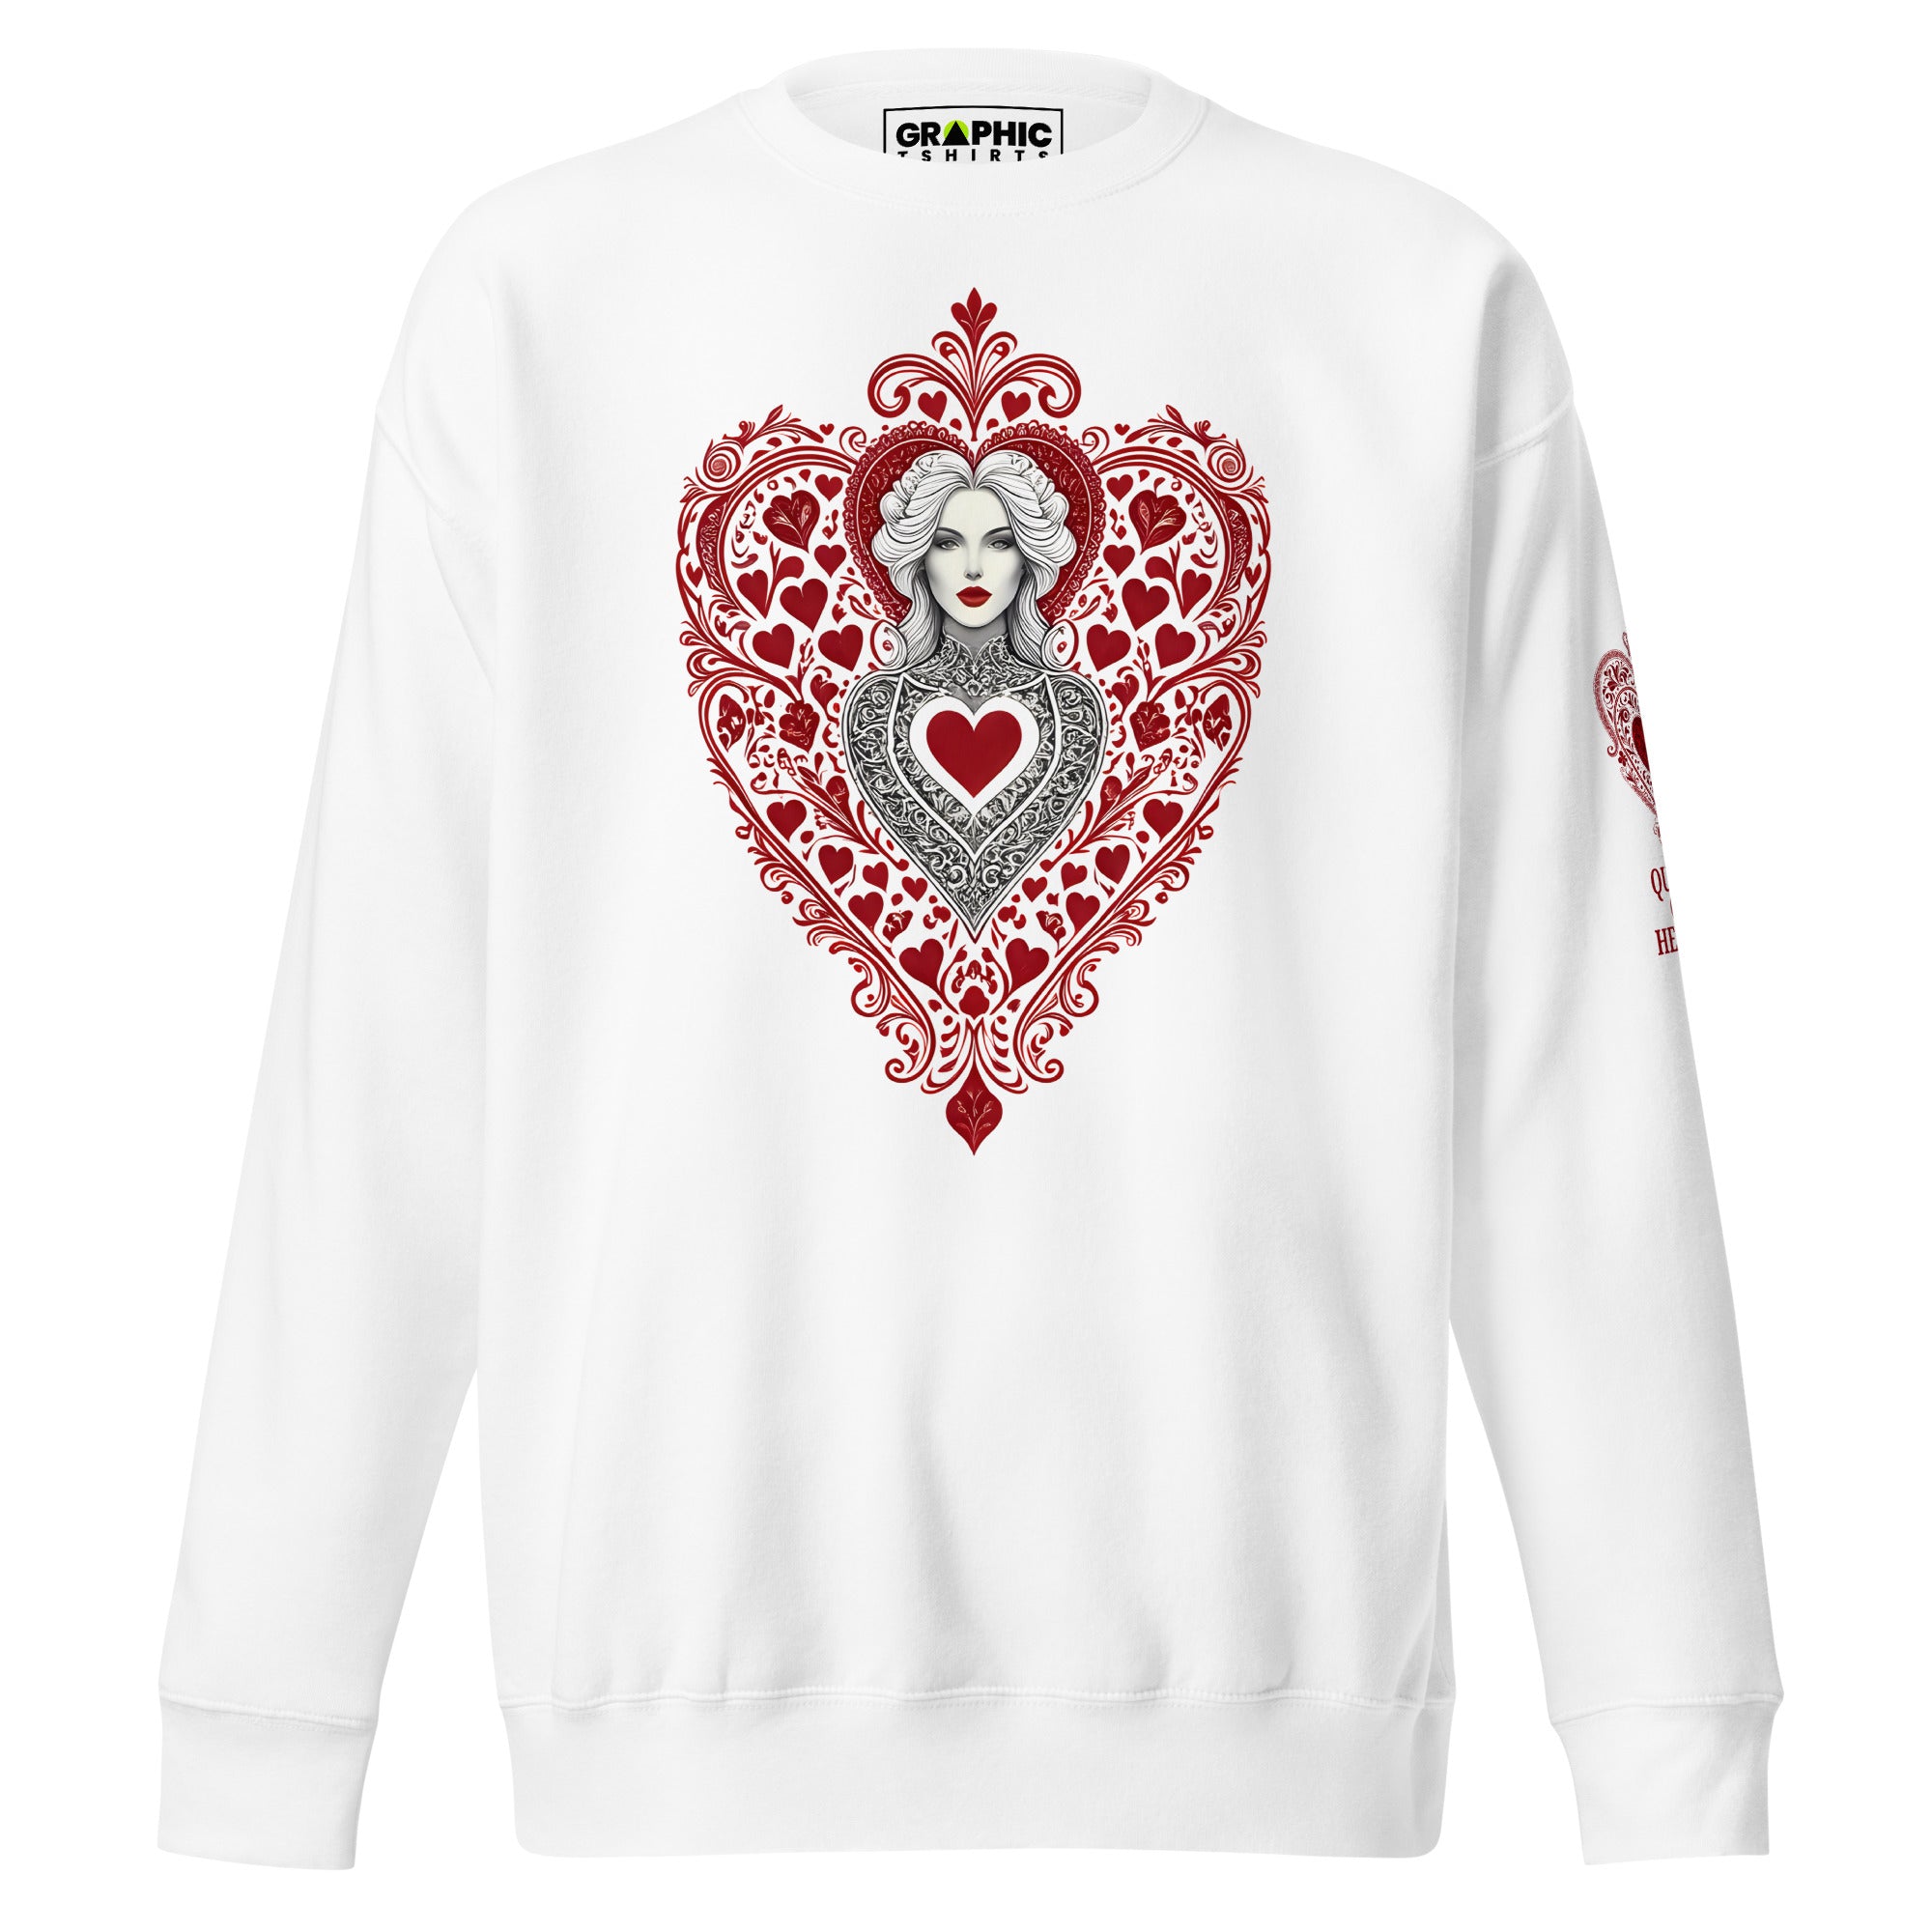 Unisex Premium Sweatshirt - Queen Of Hearts Series v.32